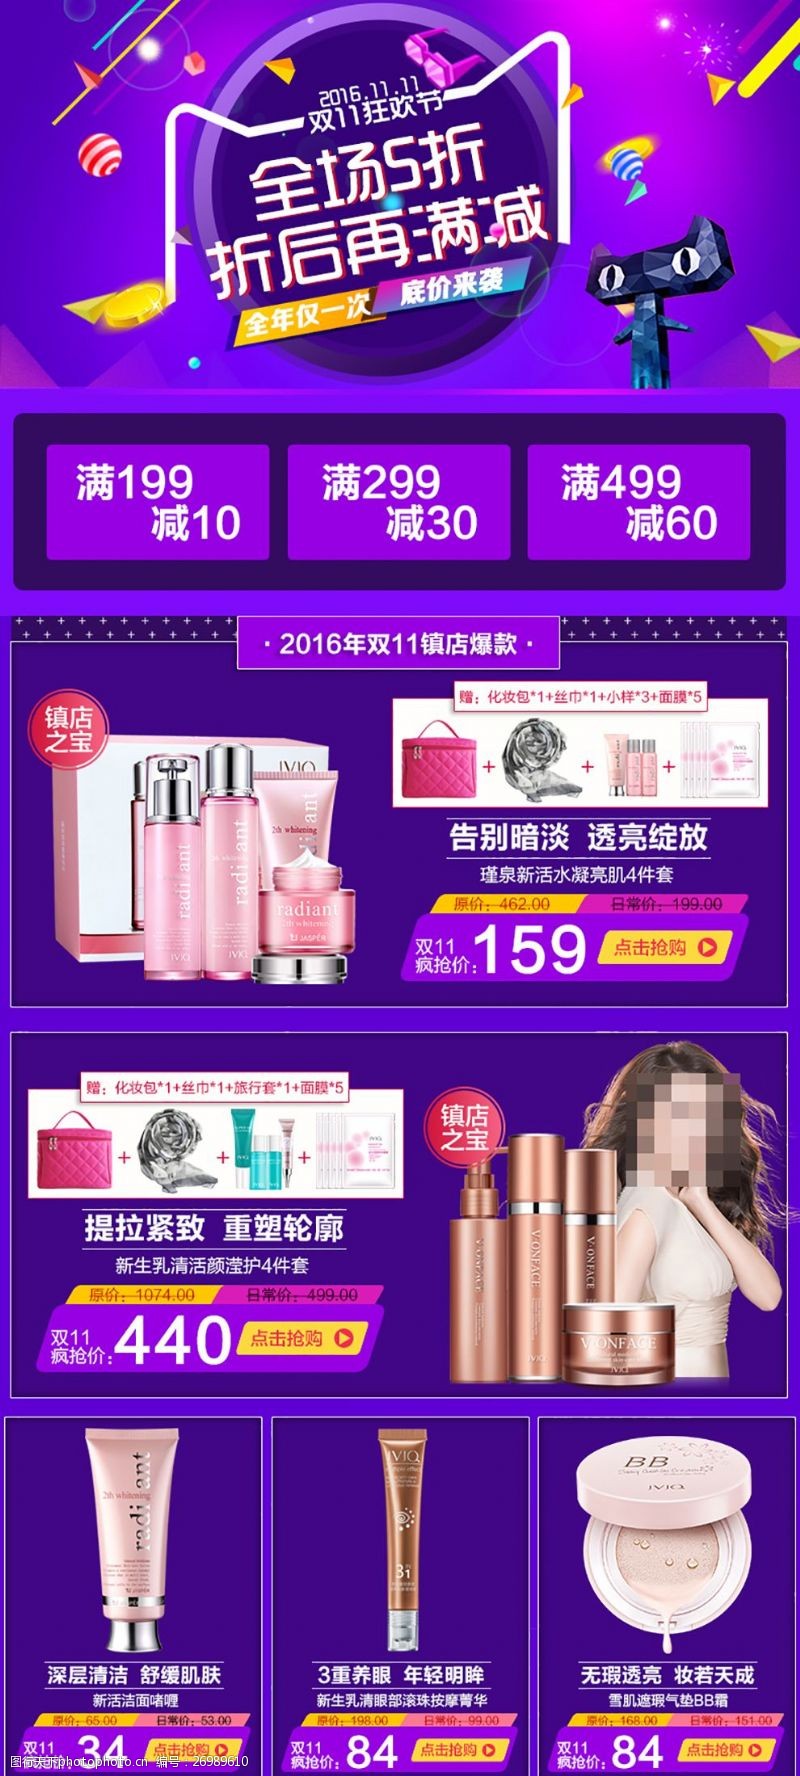 瑾泉化妆品双11狂欢节活动详情页关联产品